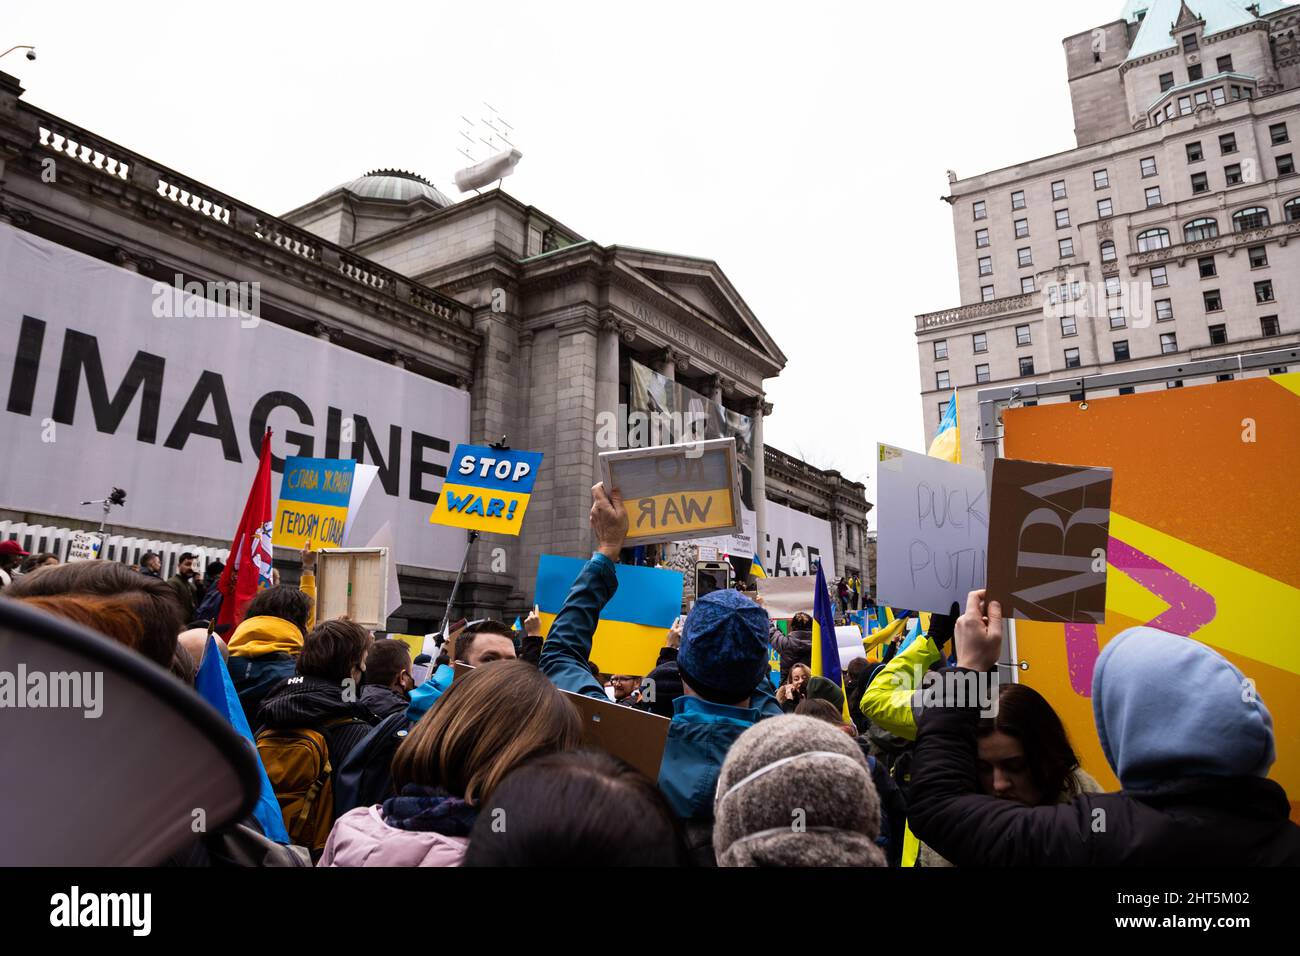 DOWNTOWN VANCOUVER, BC, KANADA - 26. FEBRUAR 2022: Protestkundgebung gegen Wladimir Putin und die russische Invasion in der Ukraine, an der Tausende teilnahmen Stockfoto